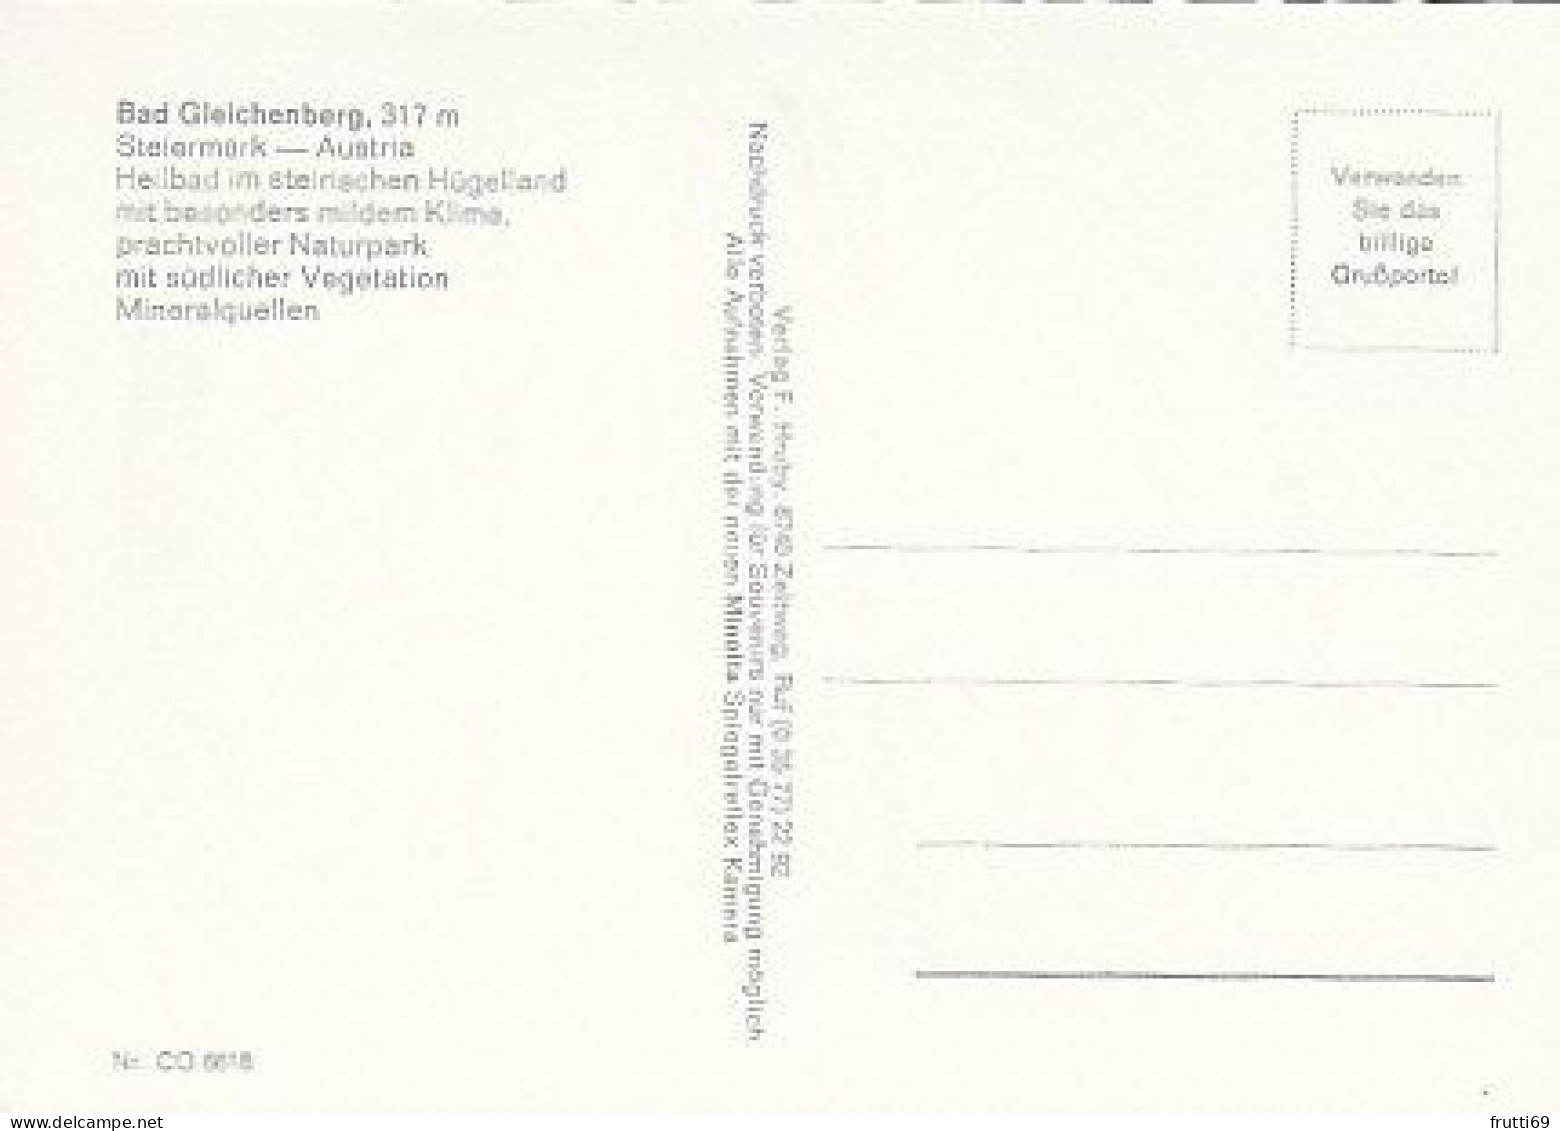 AK 209049 AUSTRIA - Bad Gleichenberg - Bad Gleichenberg